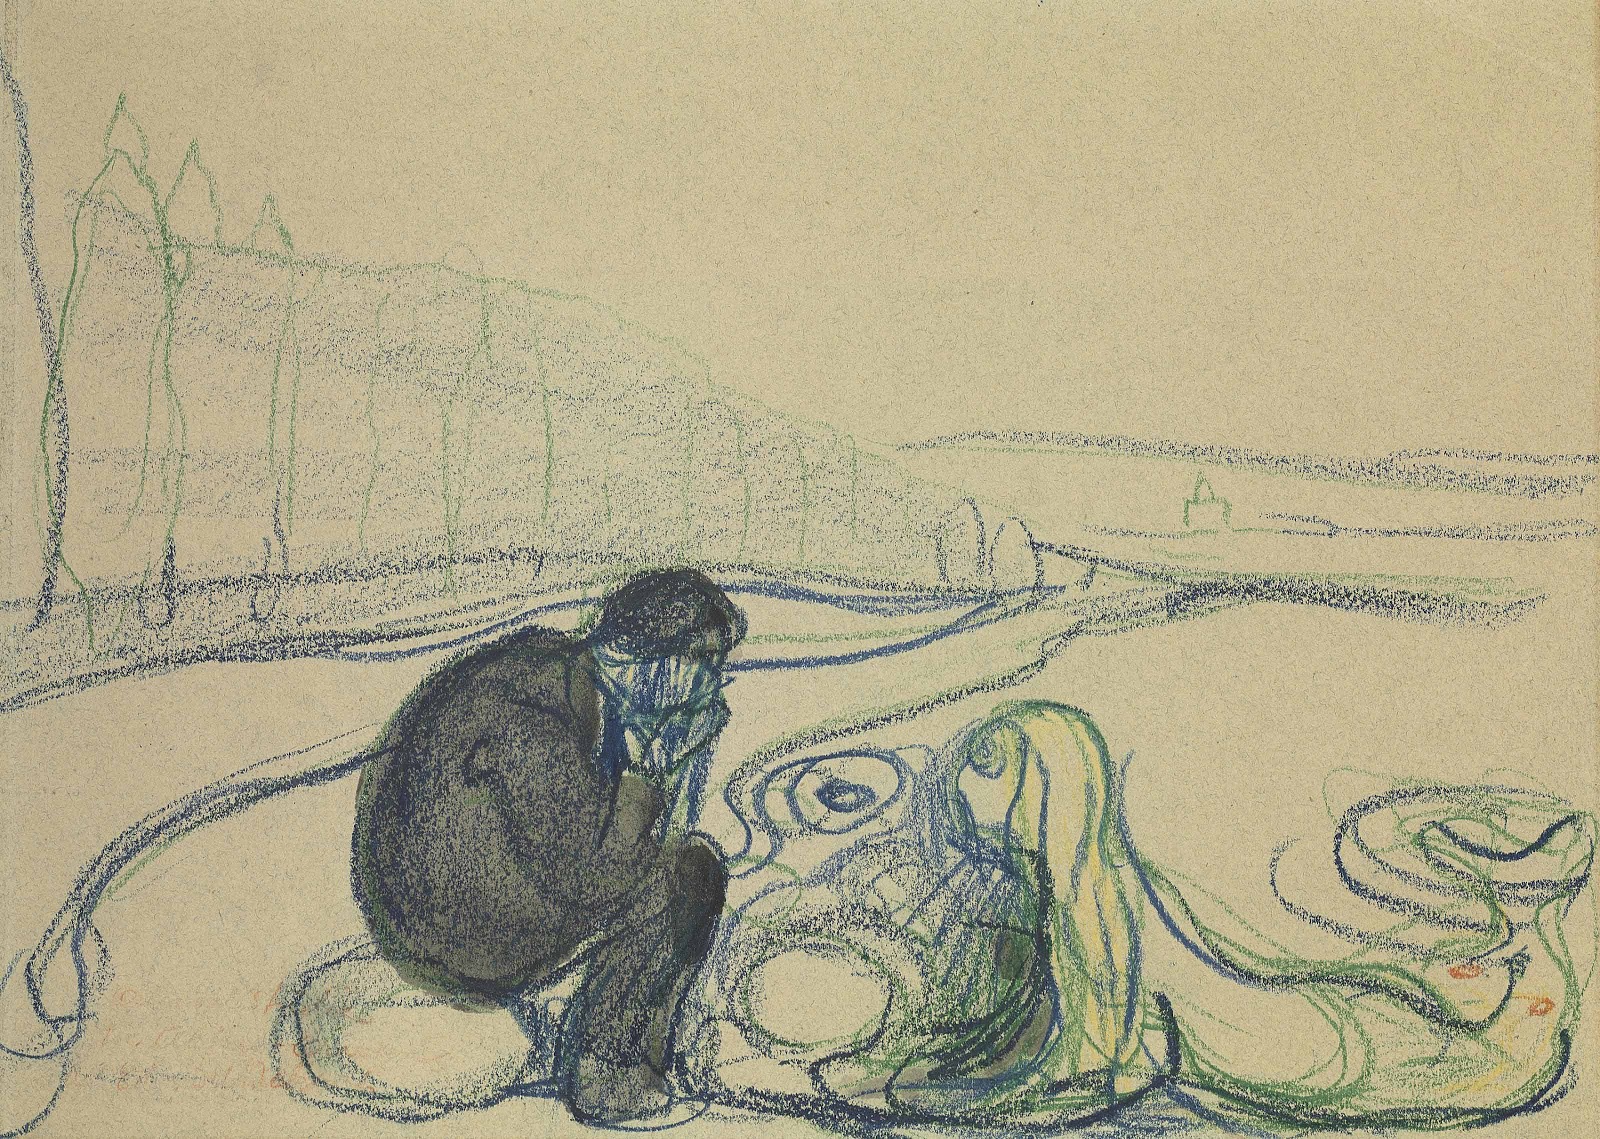 Edvard+Munch-1863-1944 (33).jpg